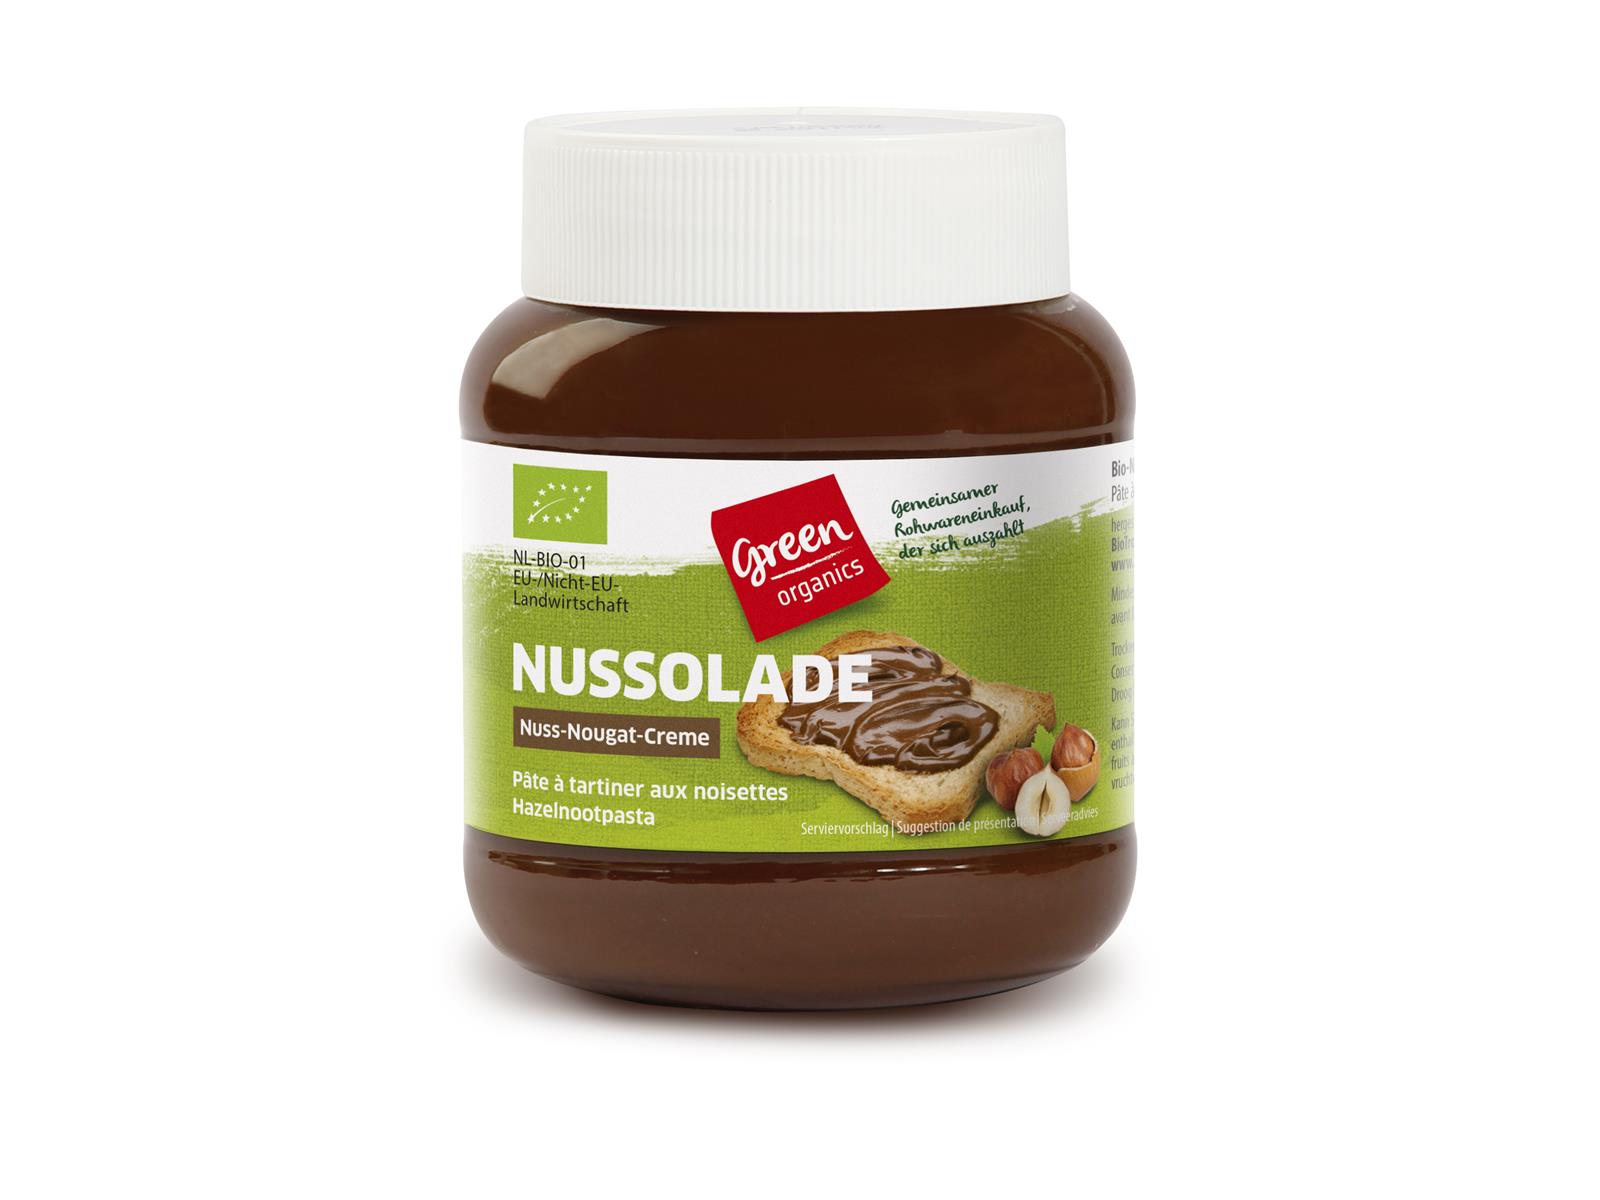 greenorganics Nussolade Nuss-Nougat-Creme 400g